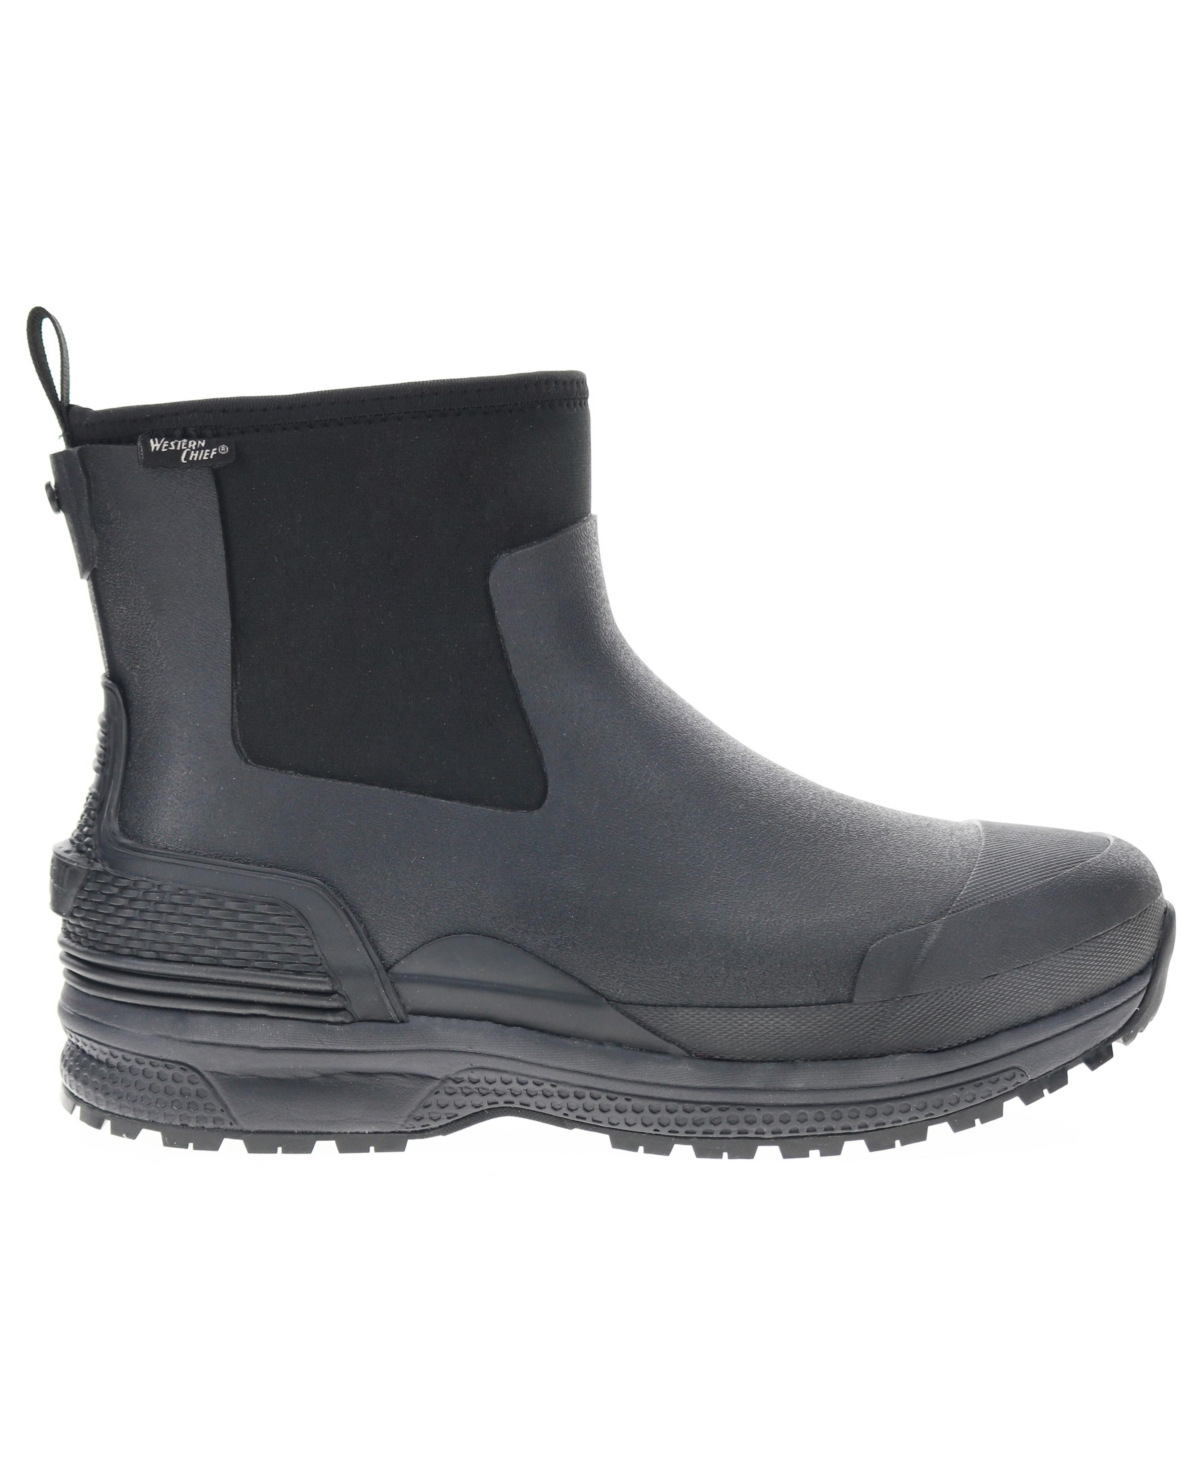 Men's Ruston Insulated Neoprene Rain Boot - Black